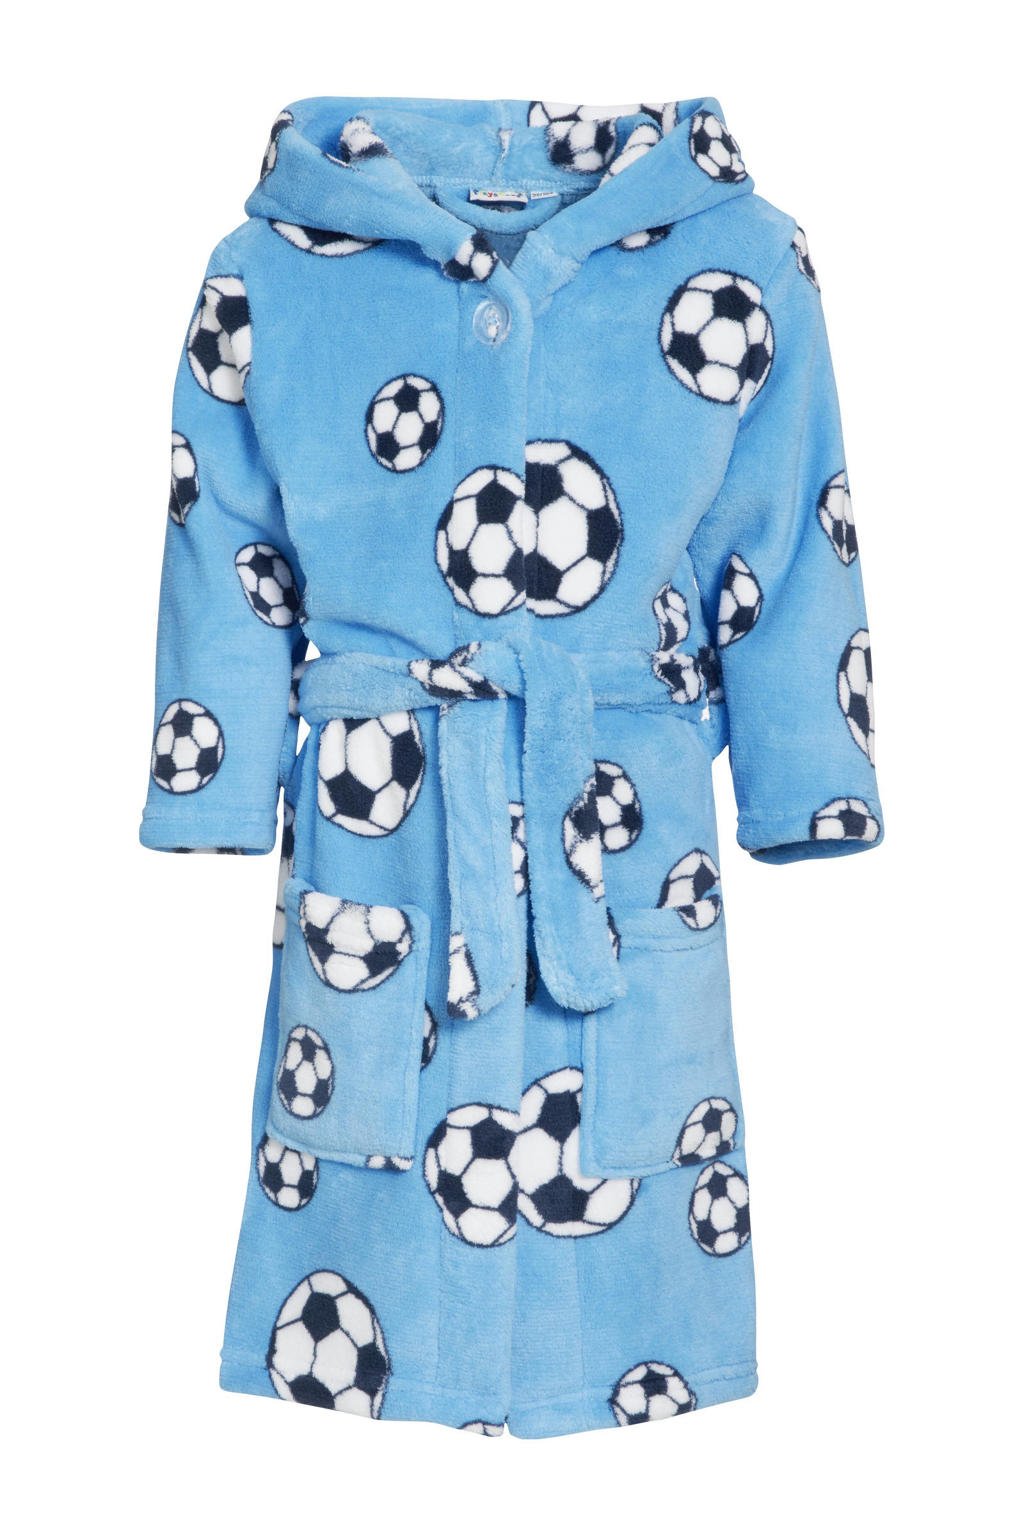 Playshoes   fleece badjas Soccer met voetbal dessin lichtblauw